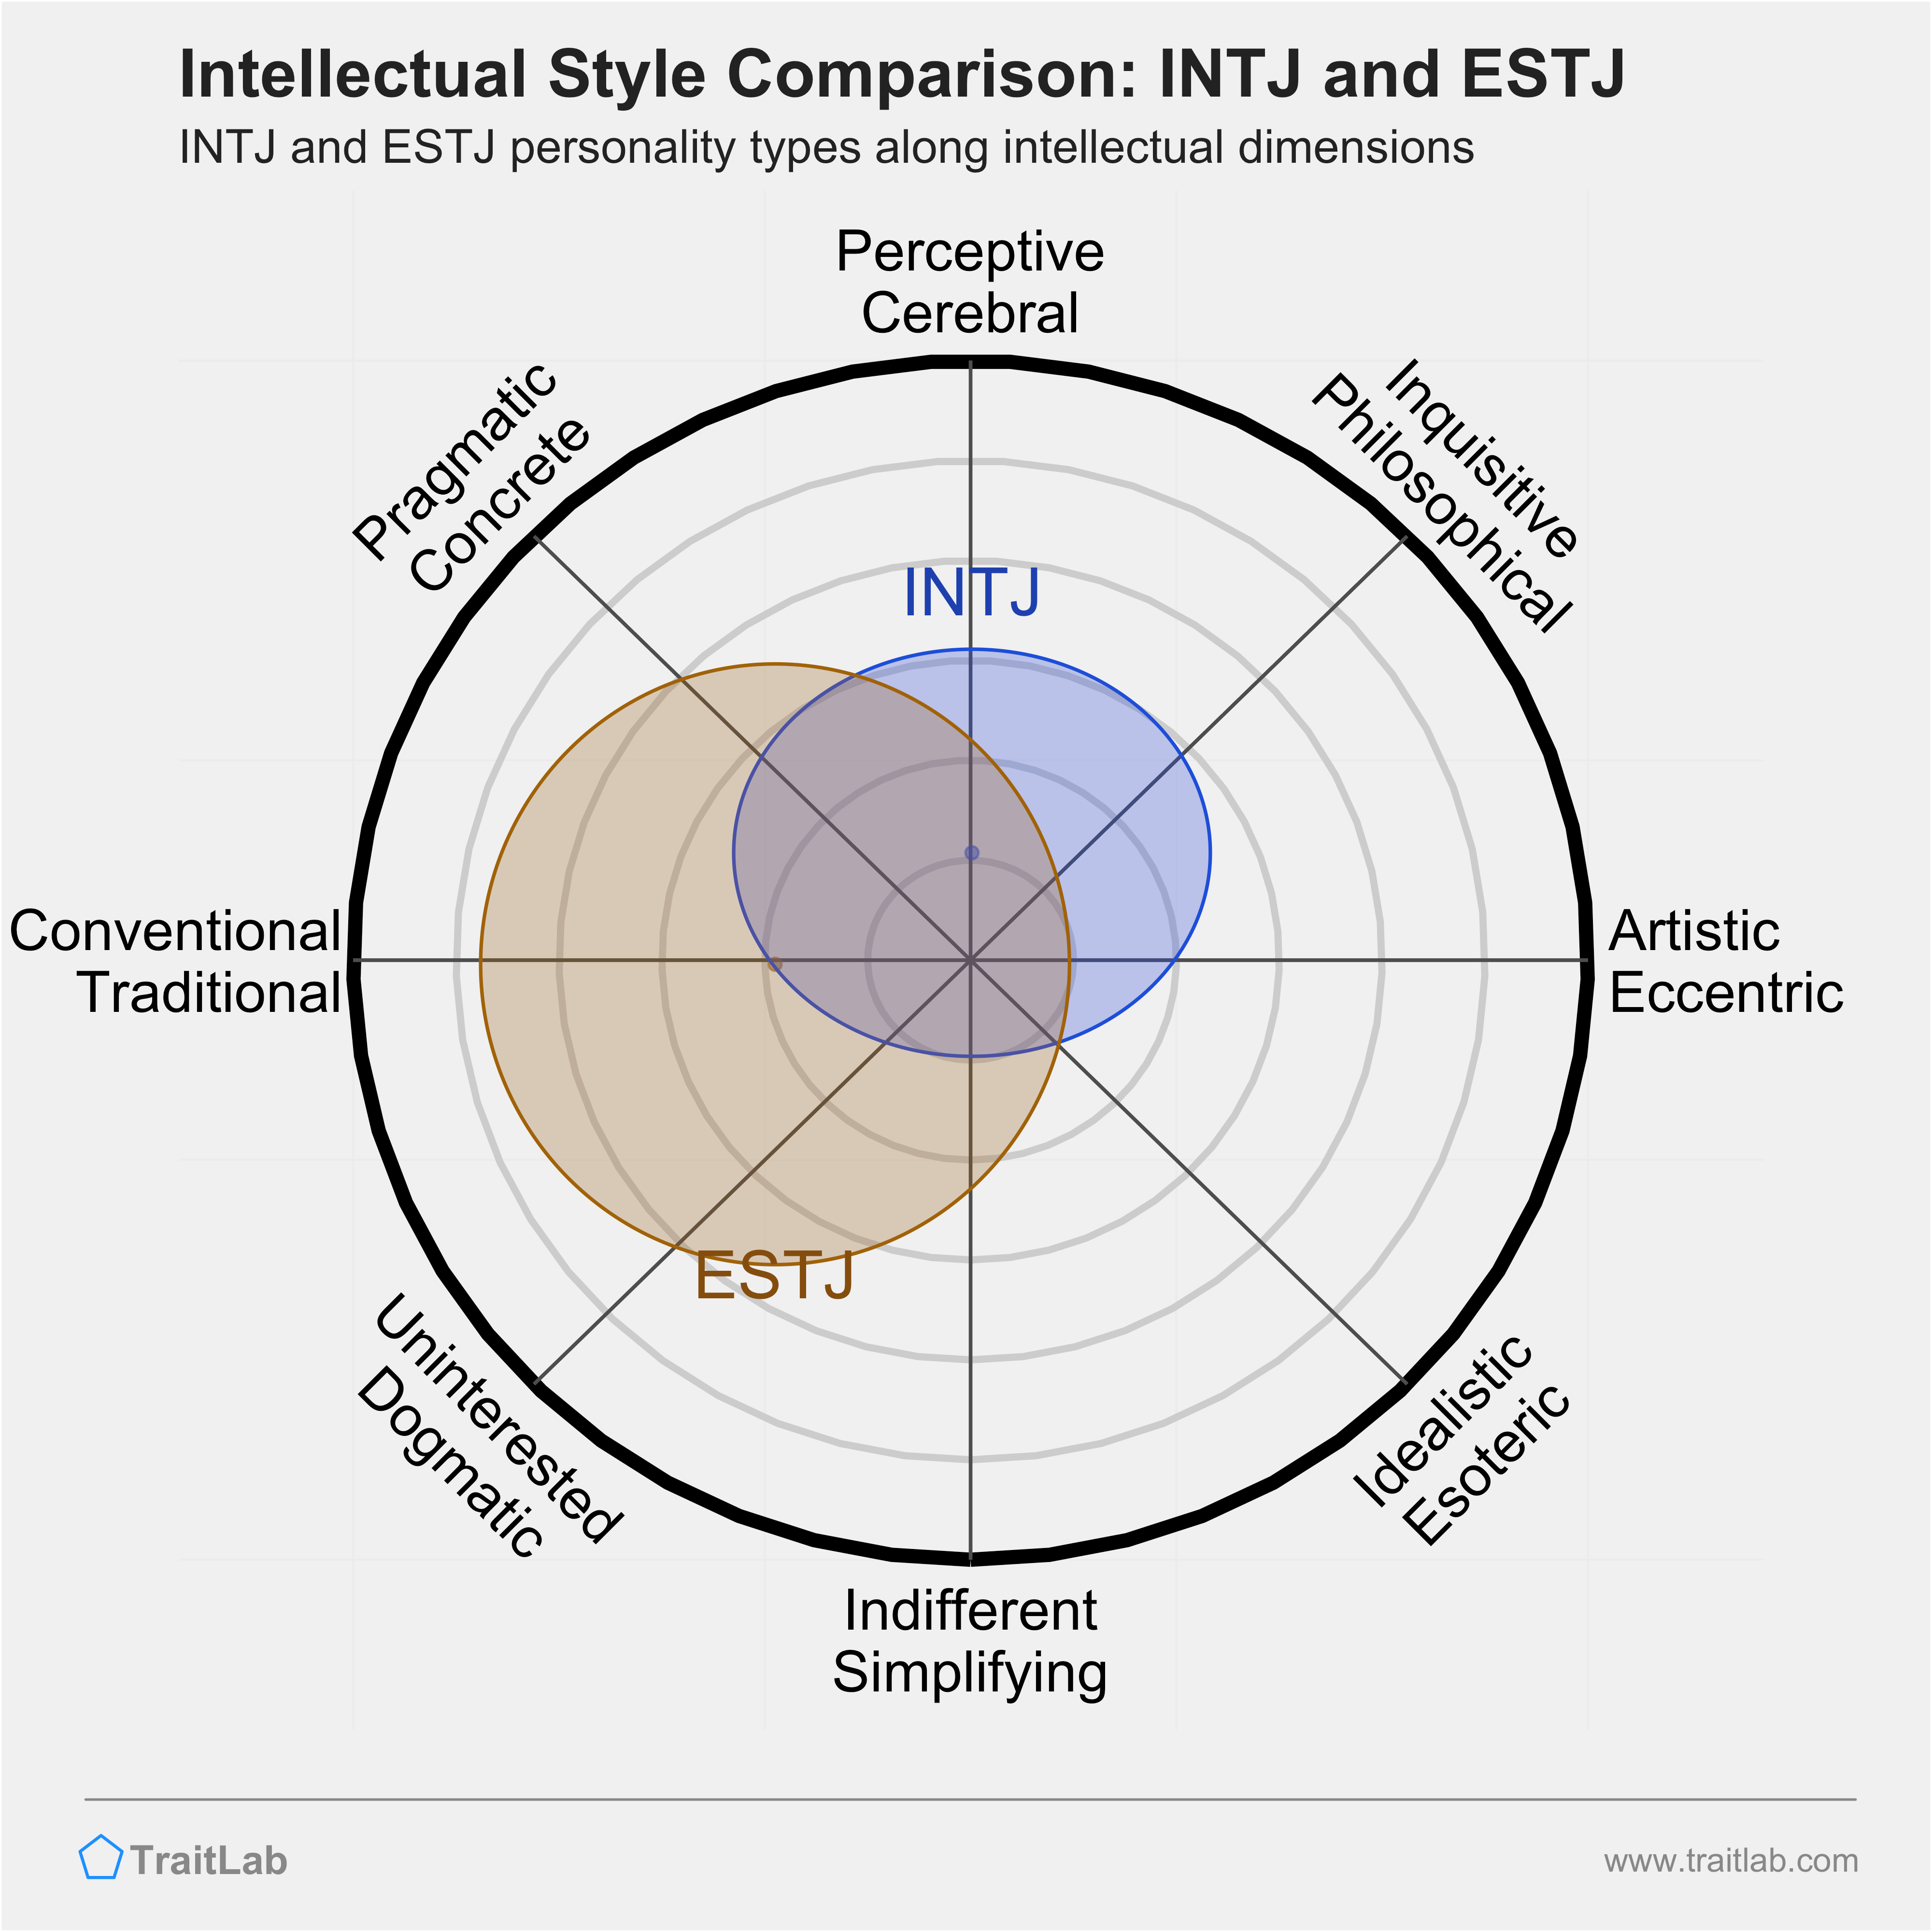 INTJ and ESTJ comparison across intellectual dimensions